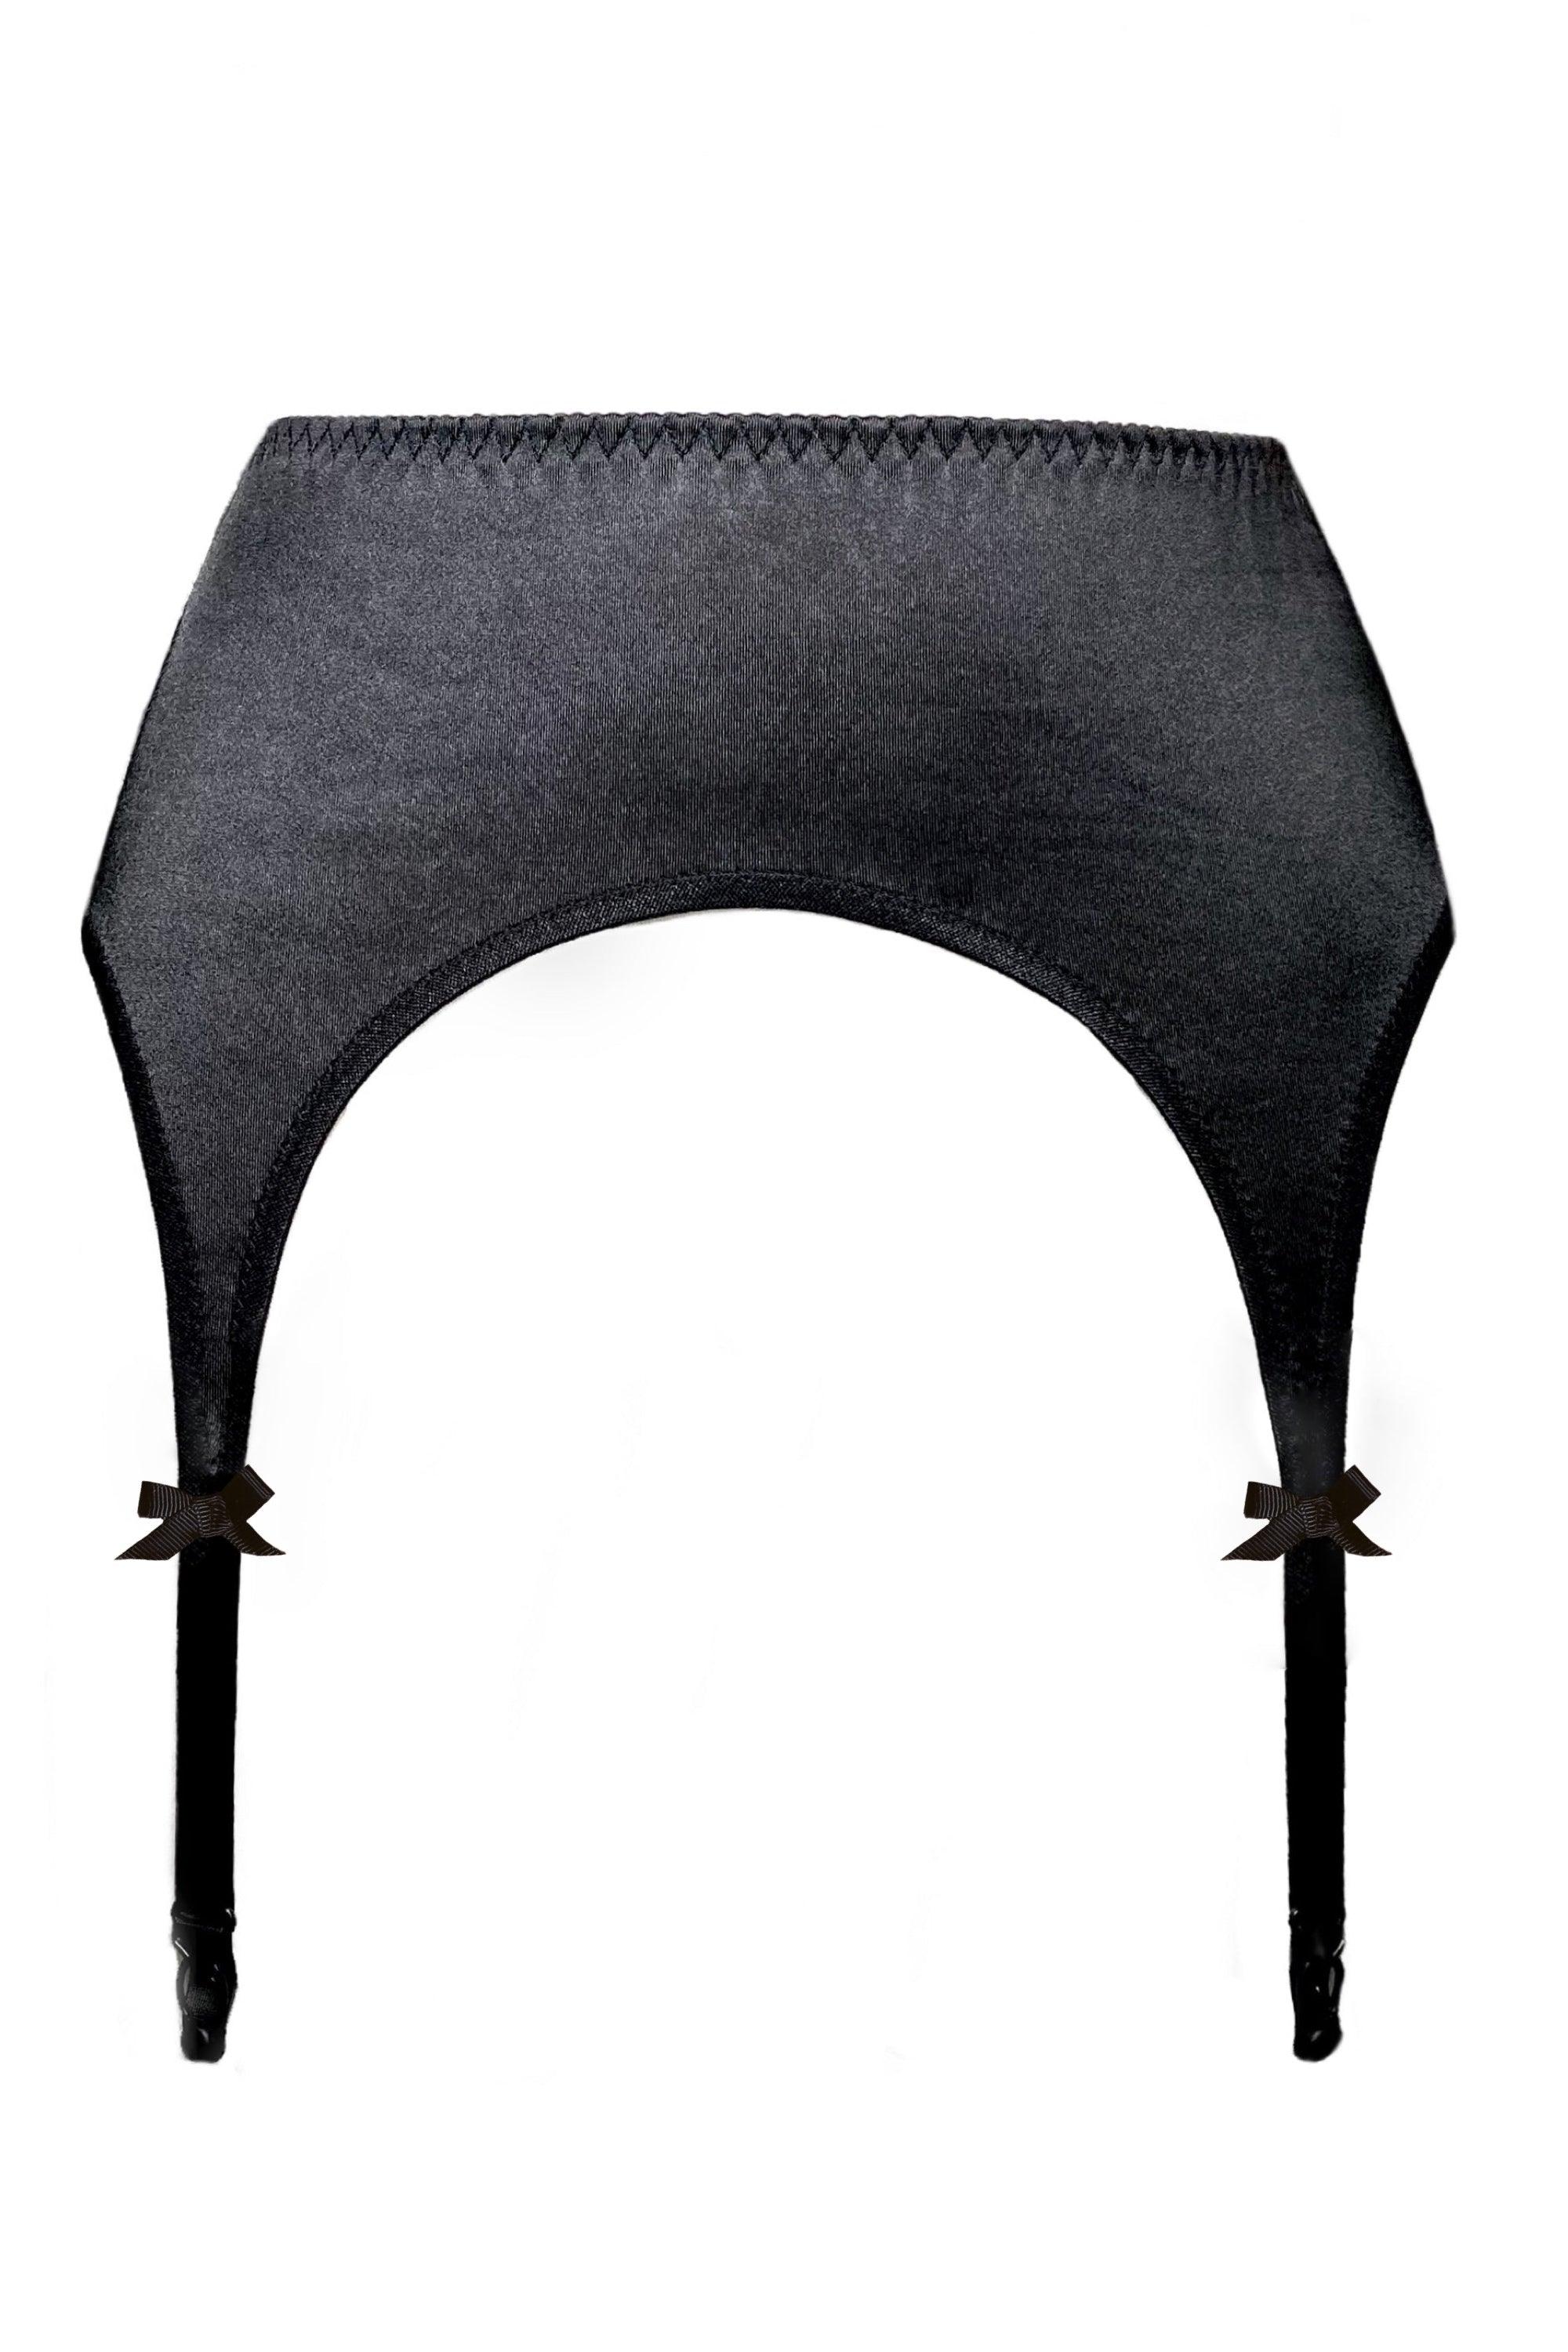 Valessa Gloss Black garter belt - yesUndress